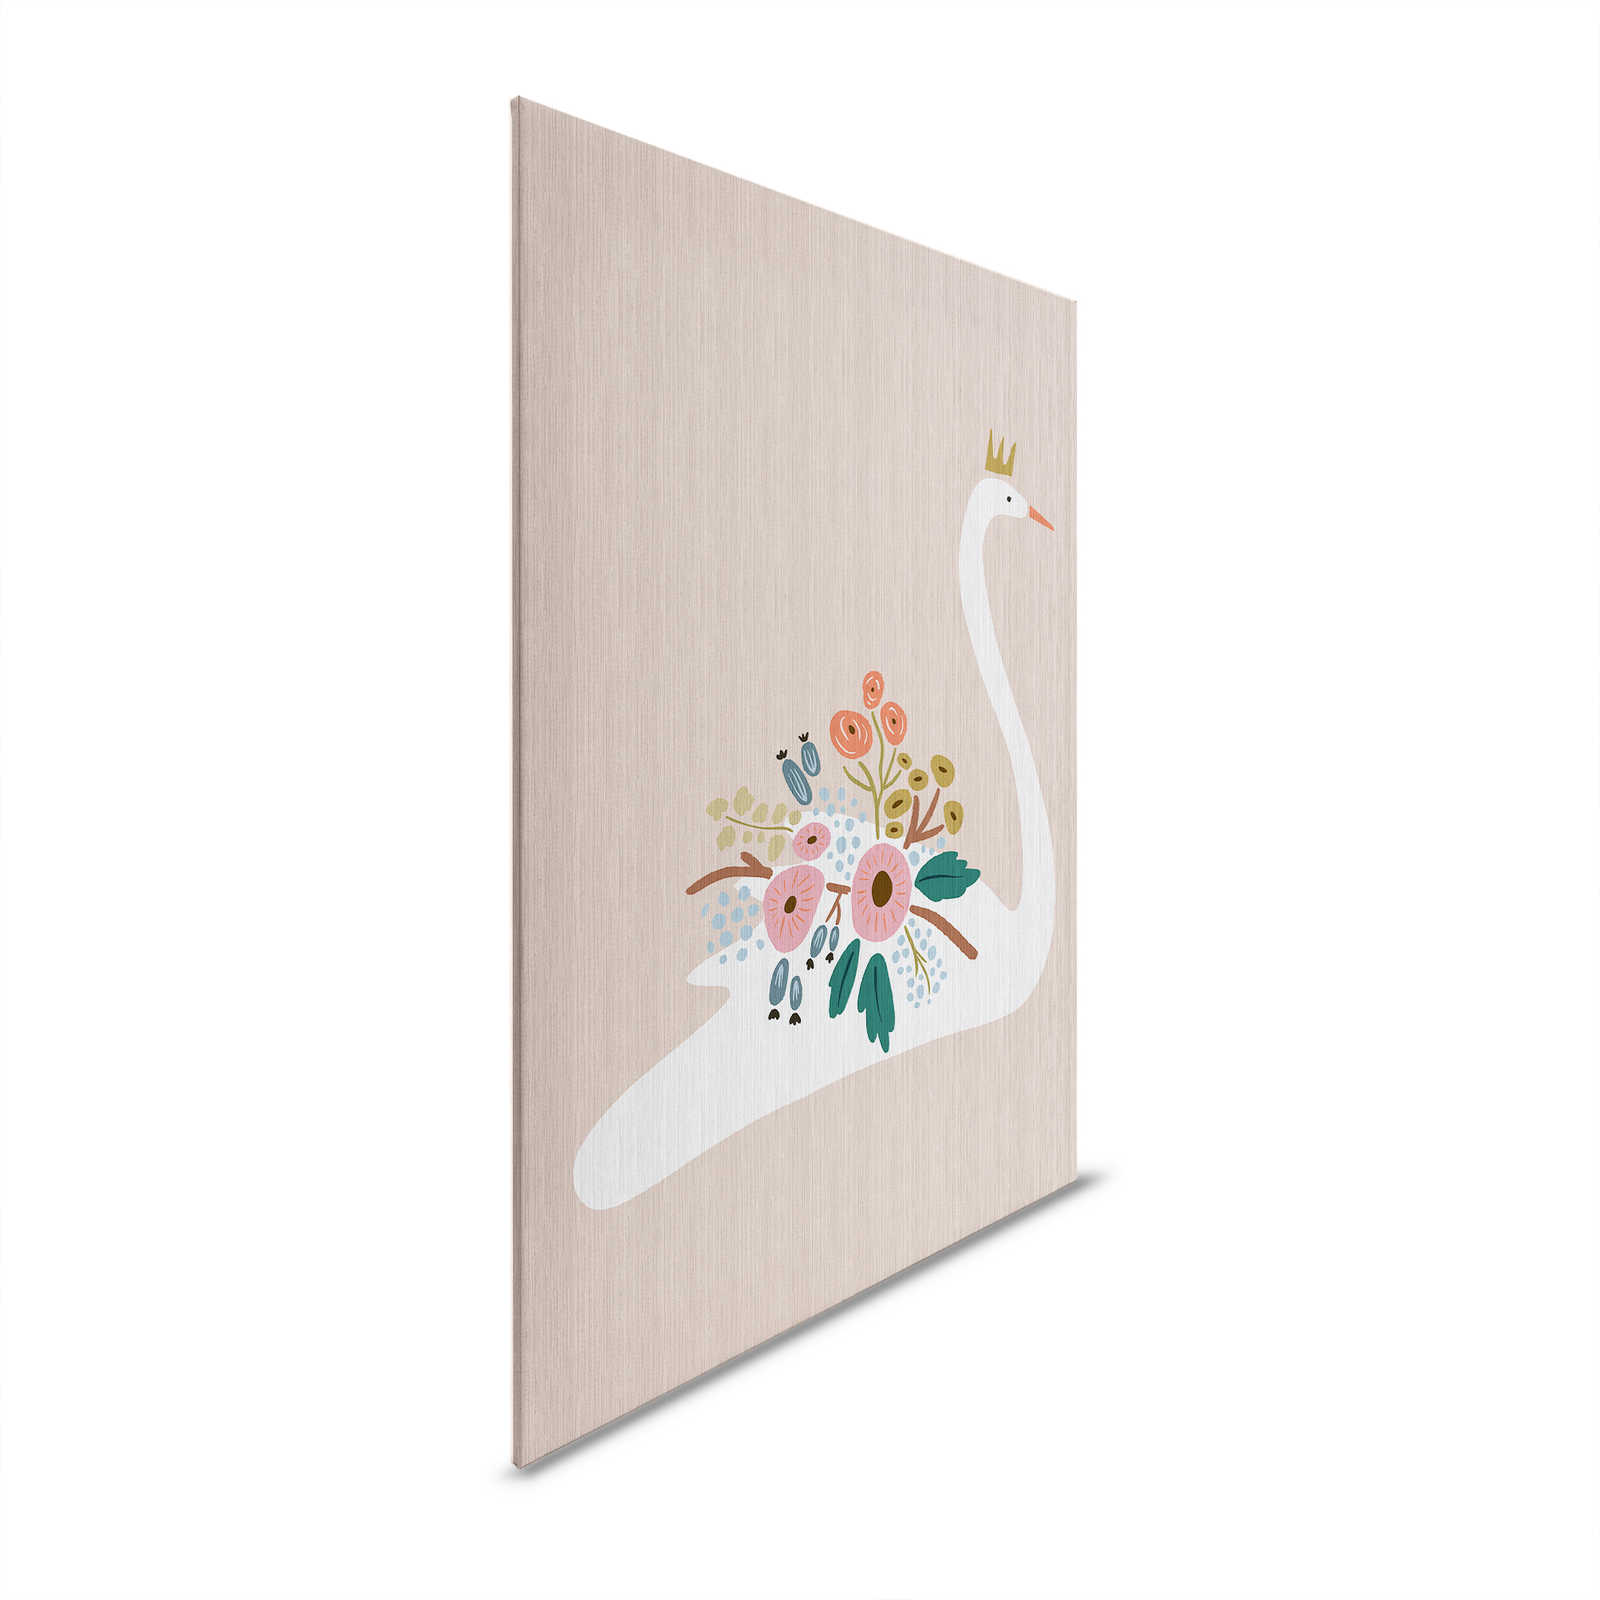 Up North 1 - Cuadro en lienzo Diseño escandinavo Cisne y flores - 1,20 m x 0,80 m
